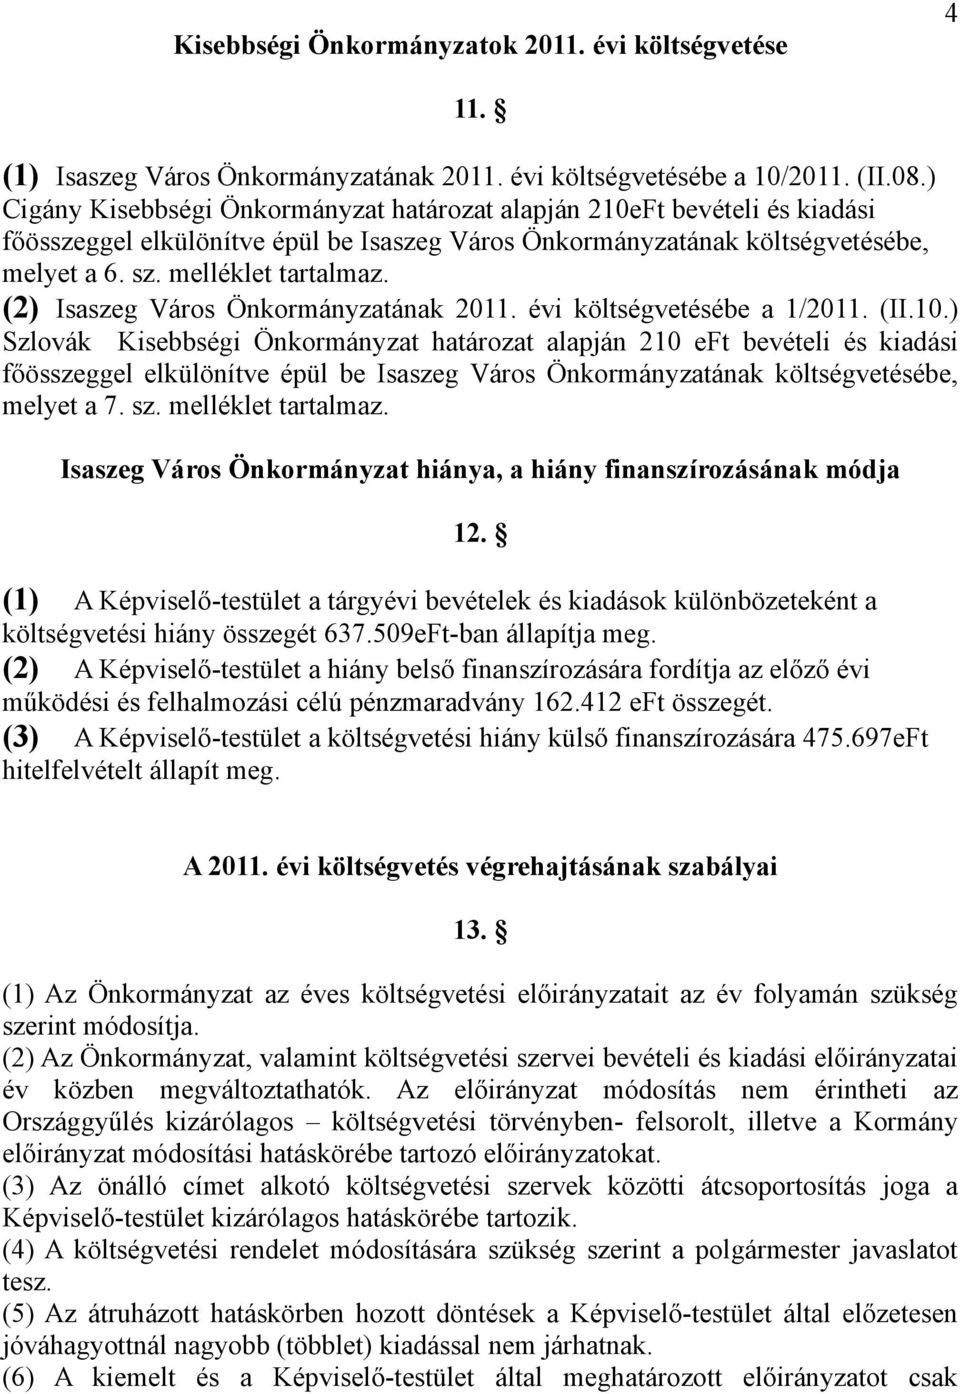 (2) Isaszeg Város Önkormányzatának 2011. évi költségvetésébe a 1/2011. (II.10.